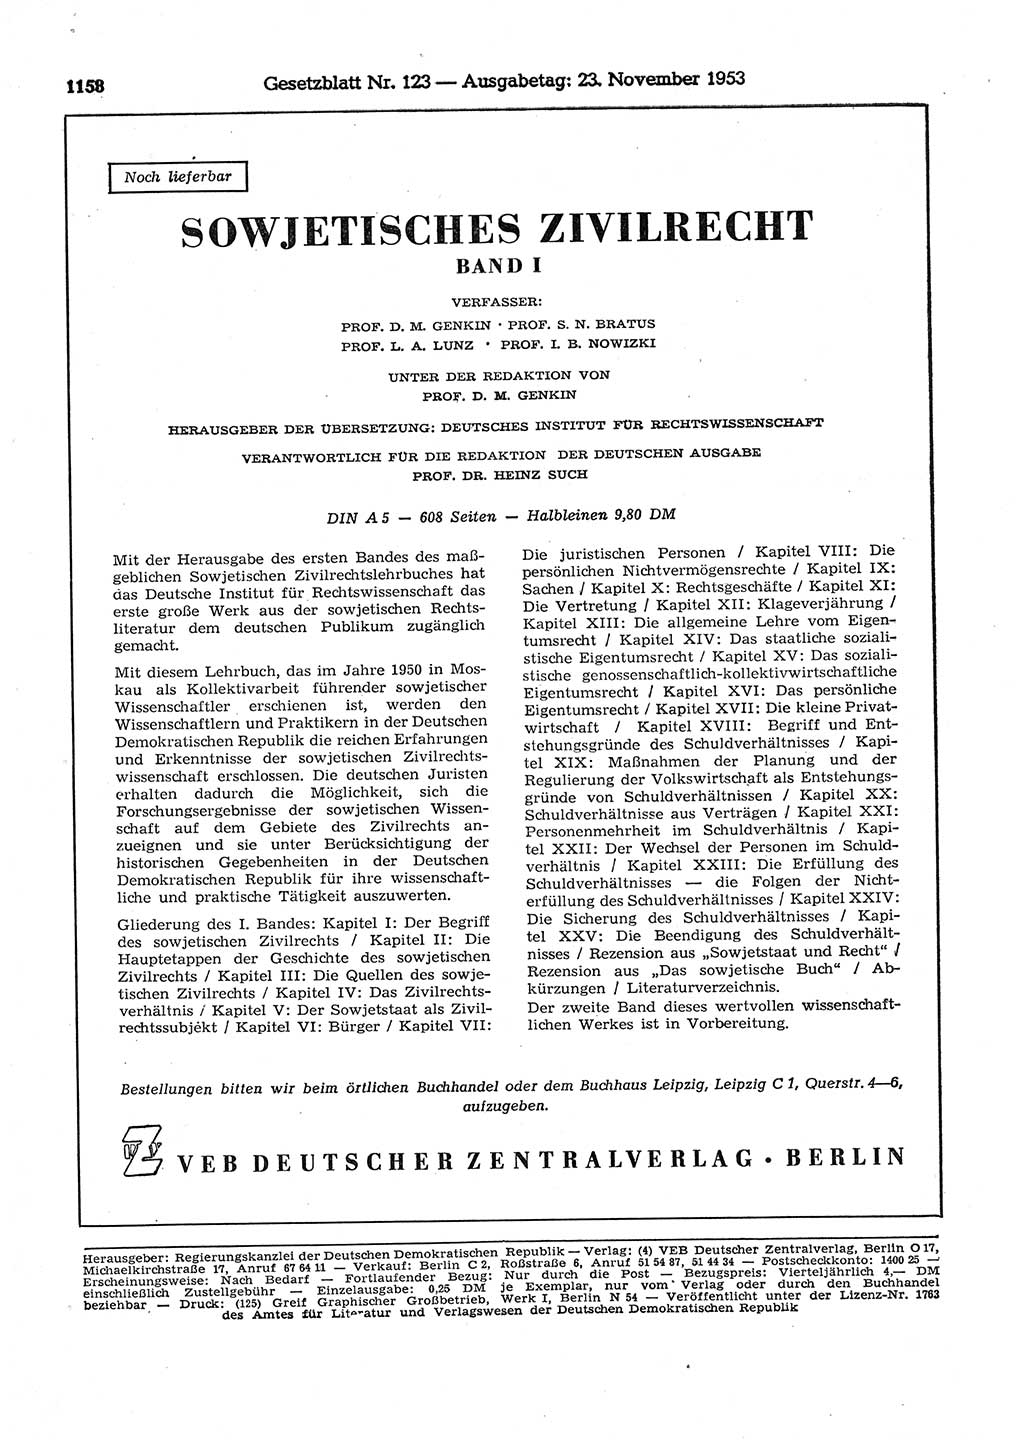 Gesetzblatt (GBl.) der Deutschen Demokratischen Republik (DDR) 1953, Seite 1158 (GBl. DDR 1953, S. 1158)